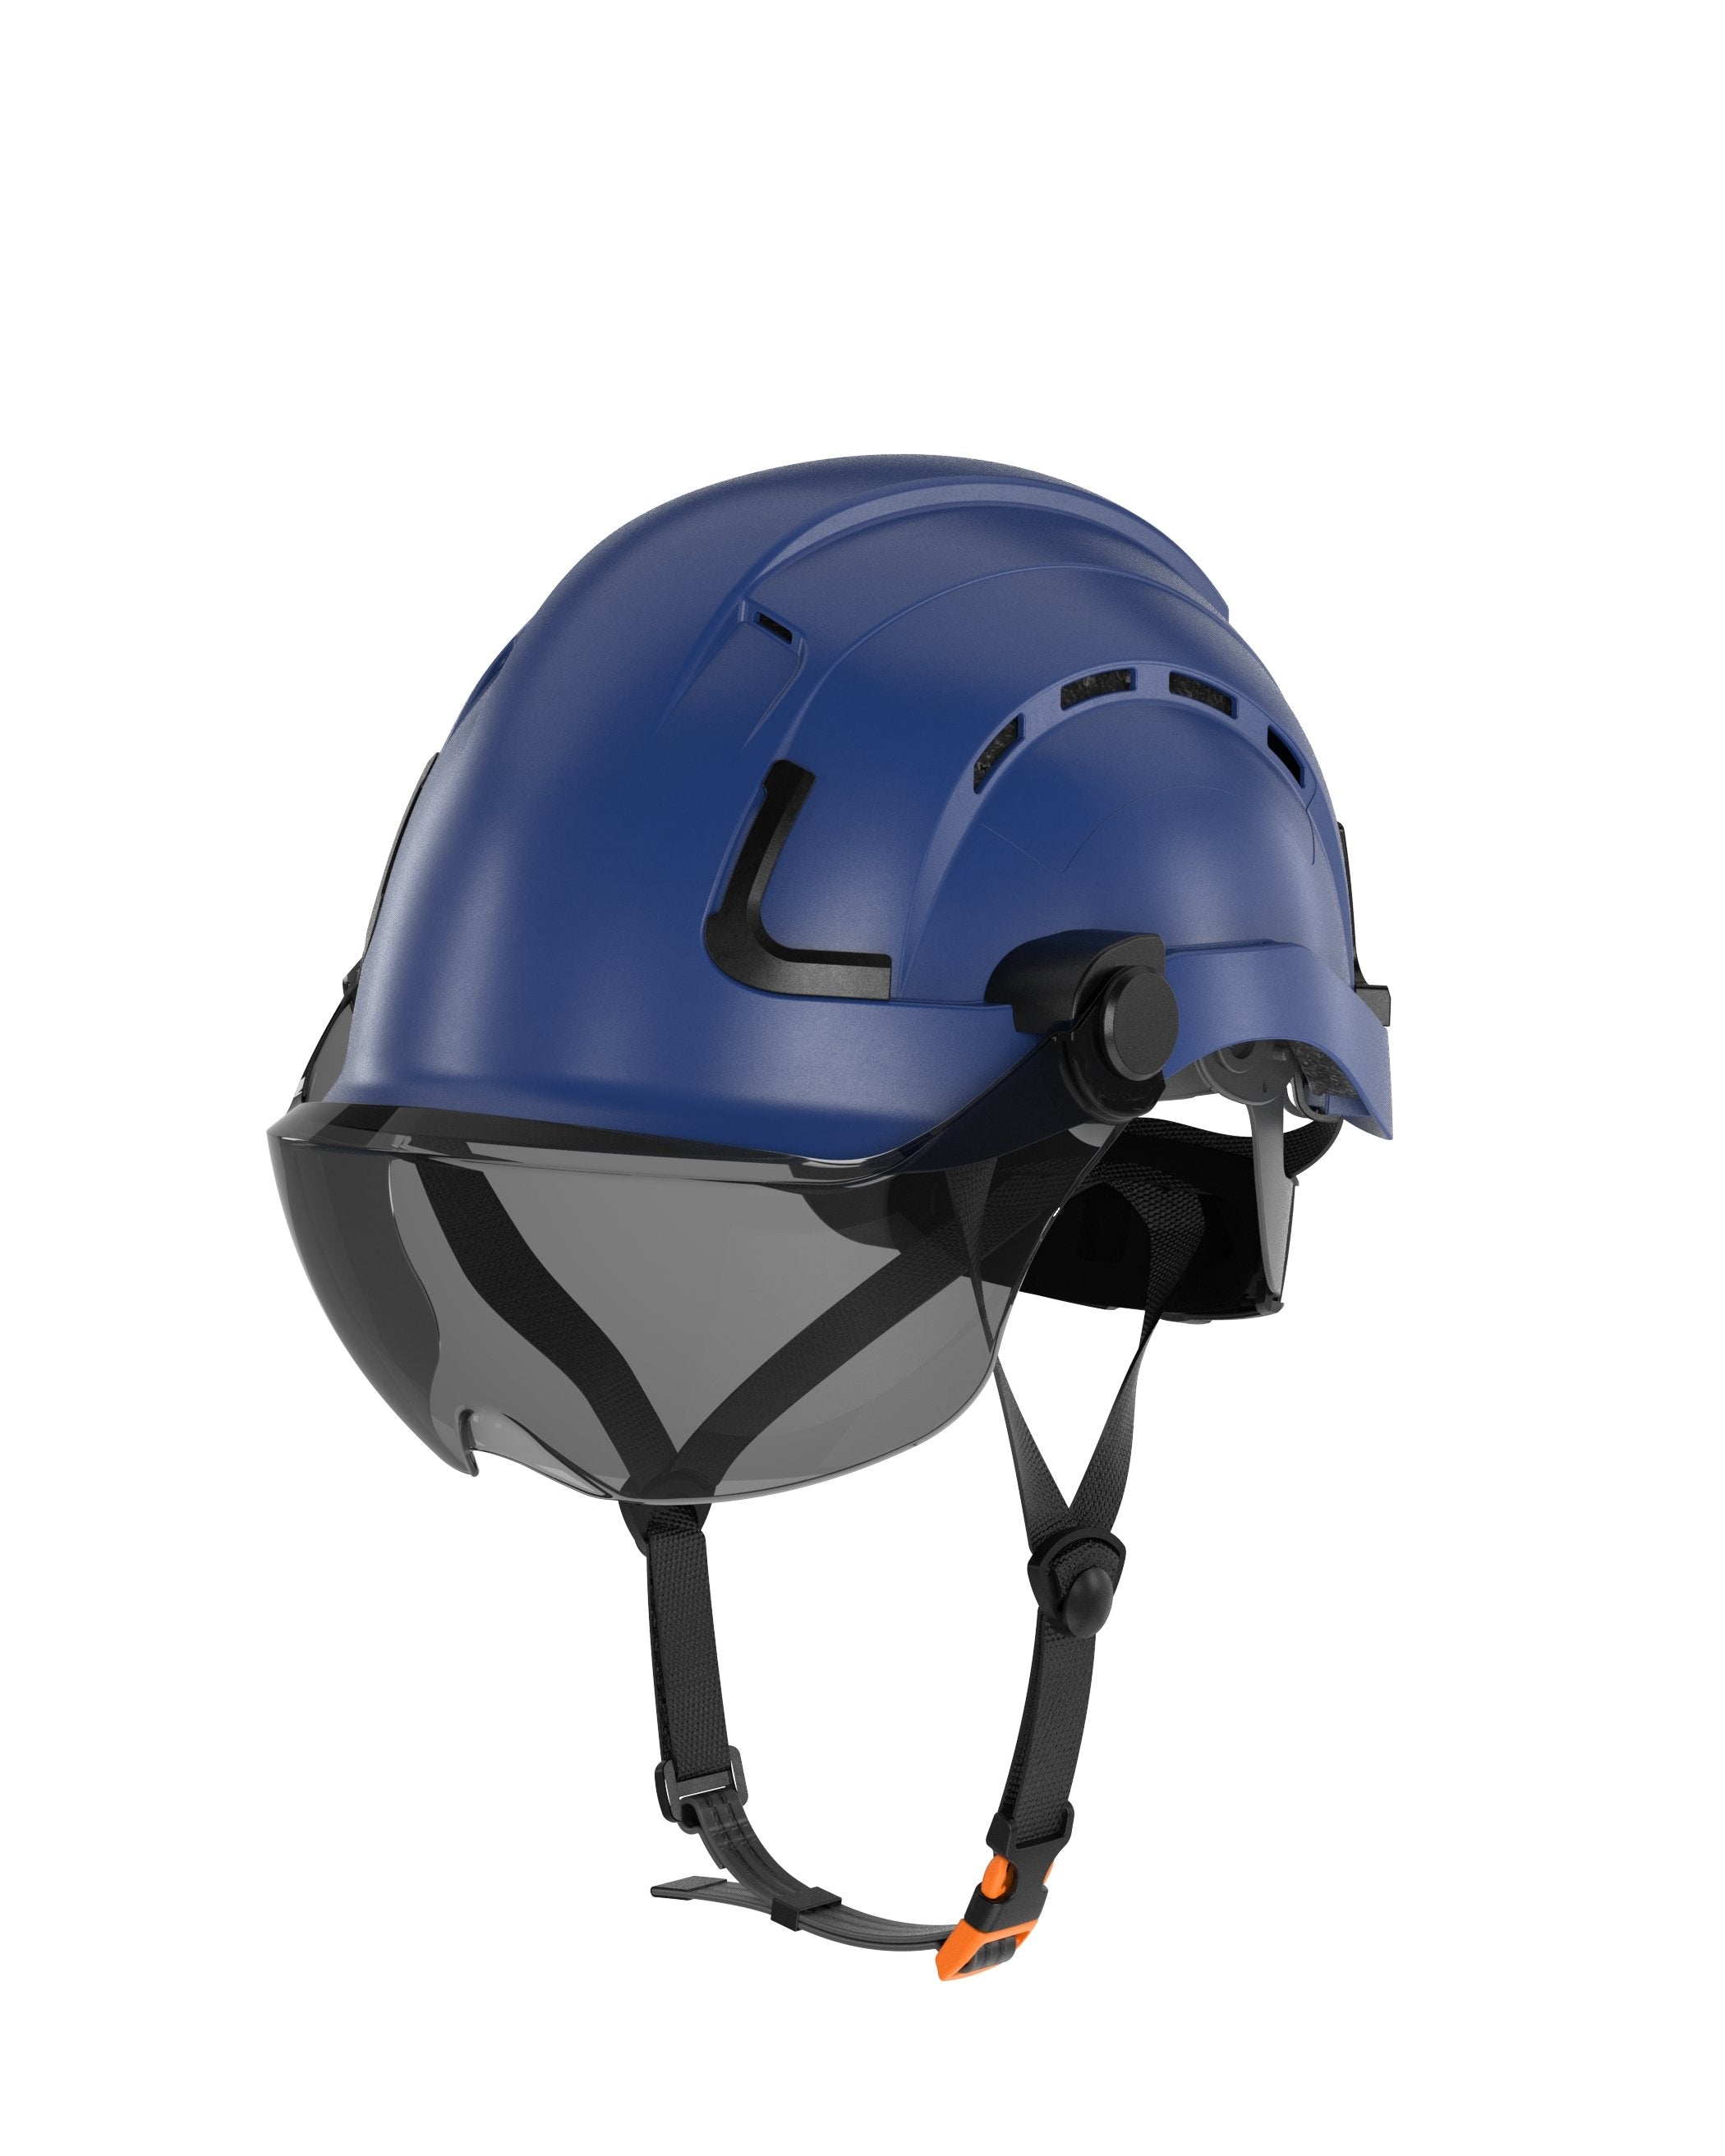 Safety Helmet Visor